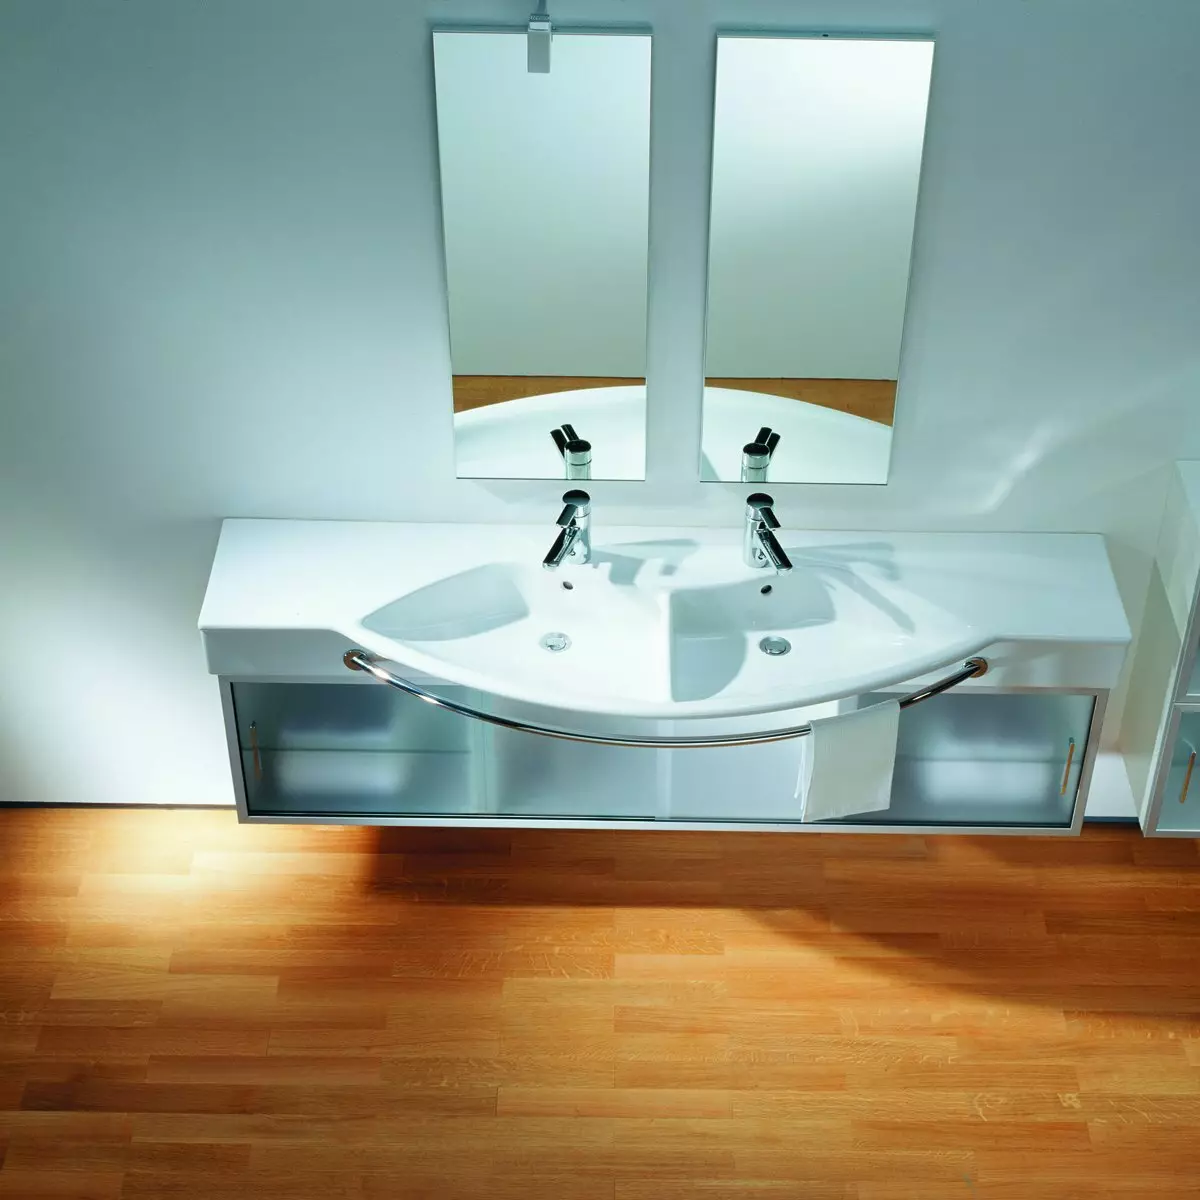 سینک معلق در حمام: دستشویی نصب شده 50-60 سانتی متر با براکت و شستشو بدون برش 55-80 سانتی متر، مدل های دیگر 21424_65